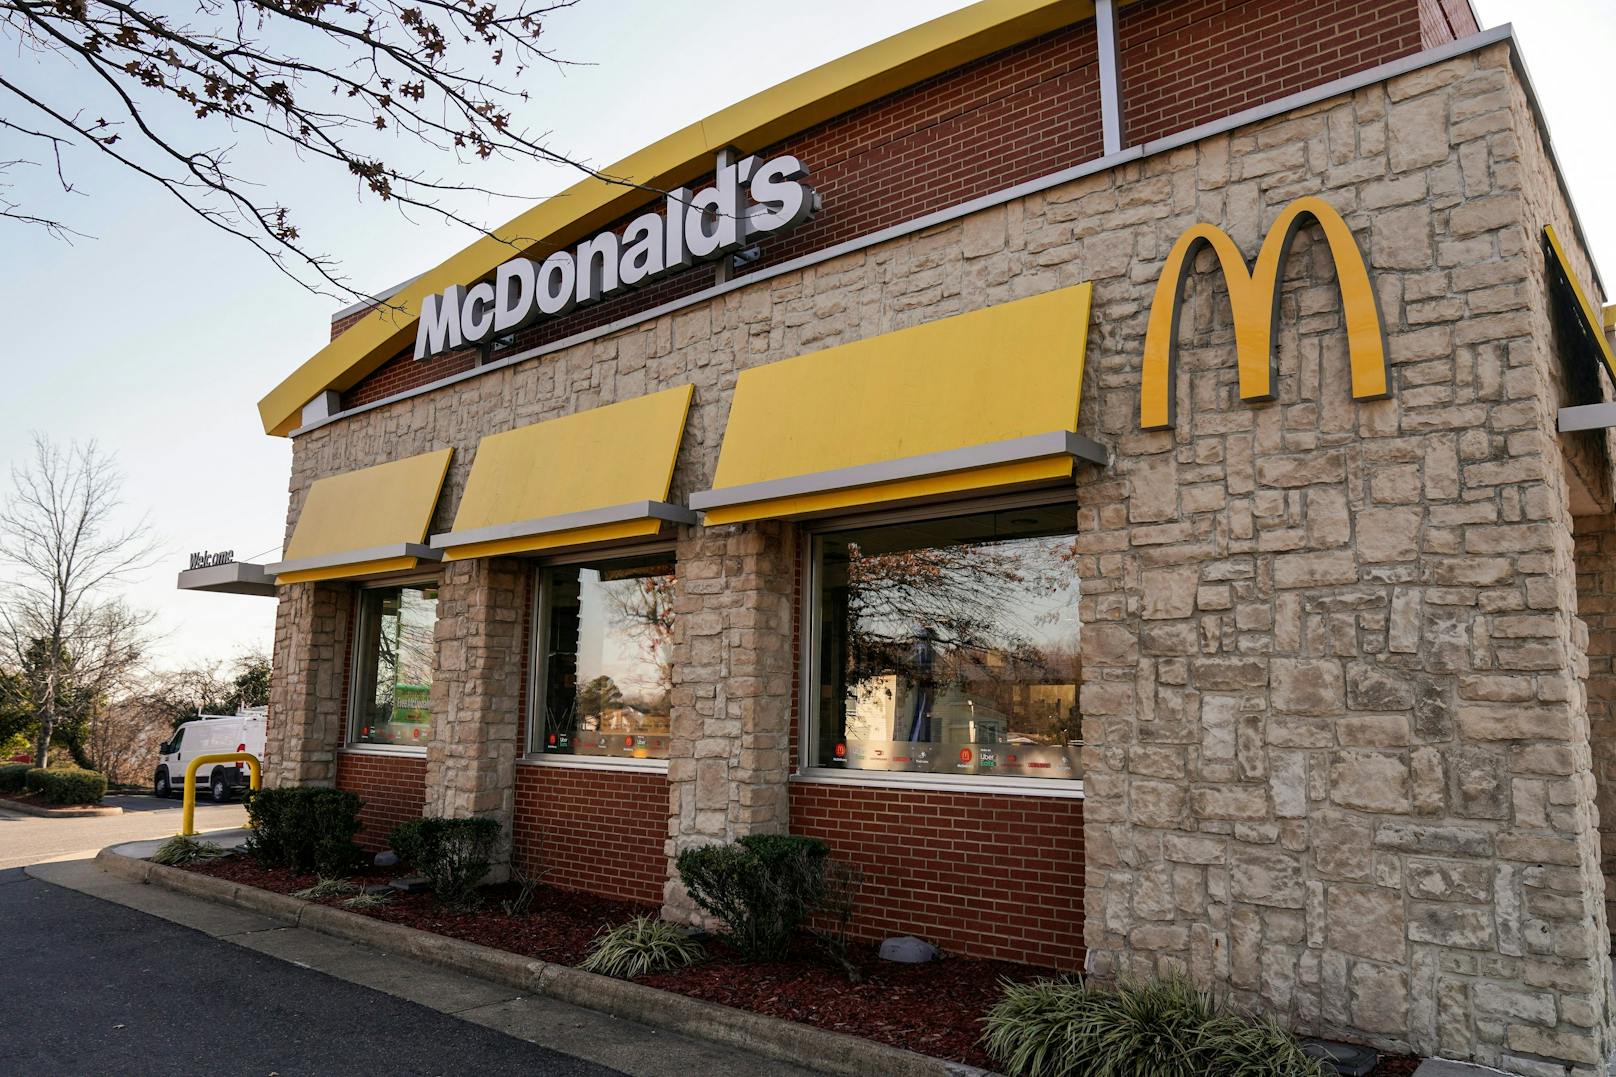 Ein McDonald's-Kunde flippte völlig aus. Sogar die Polizei musste kommen. Der Grund: Zwei McMuffins.